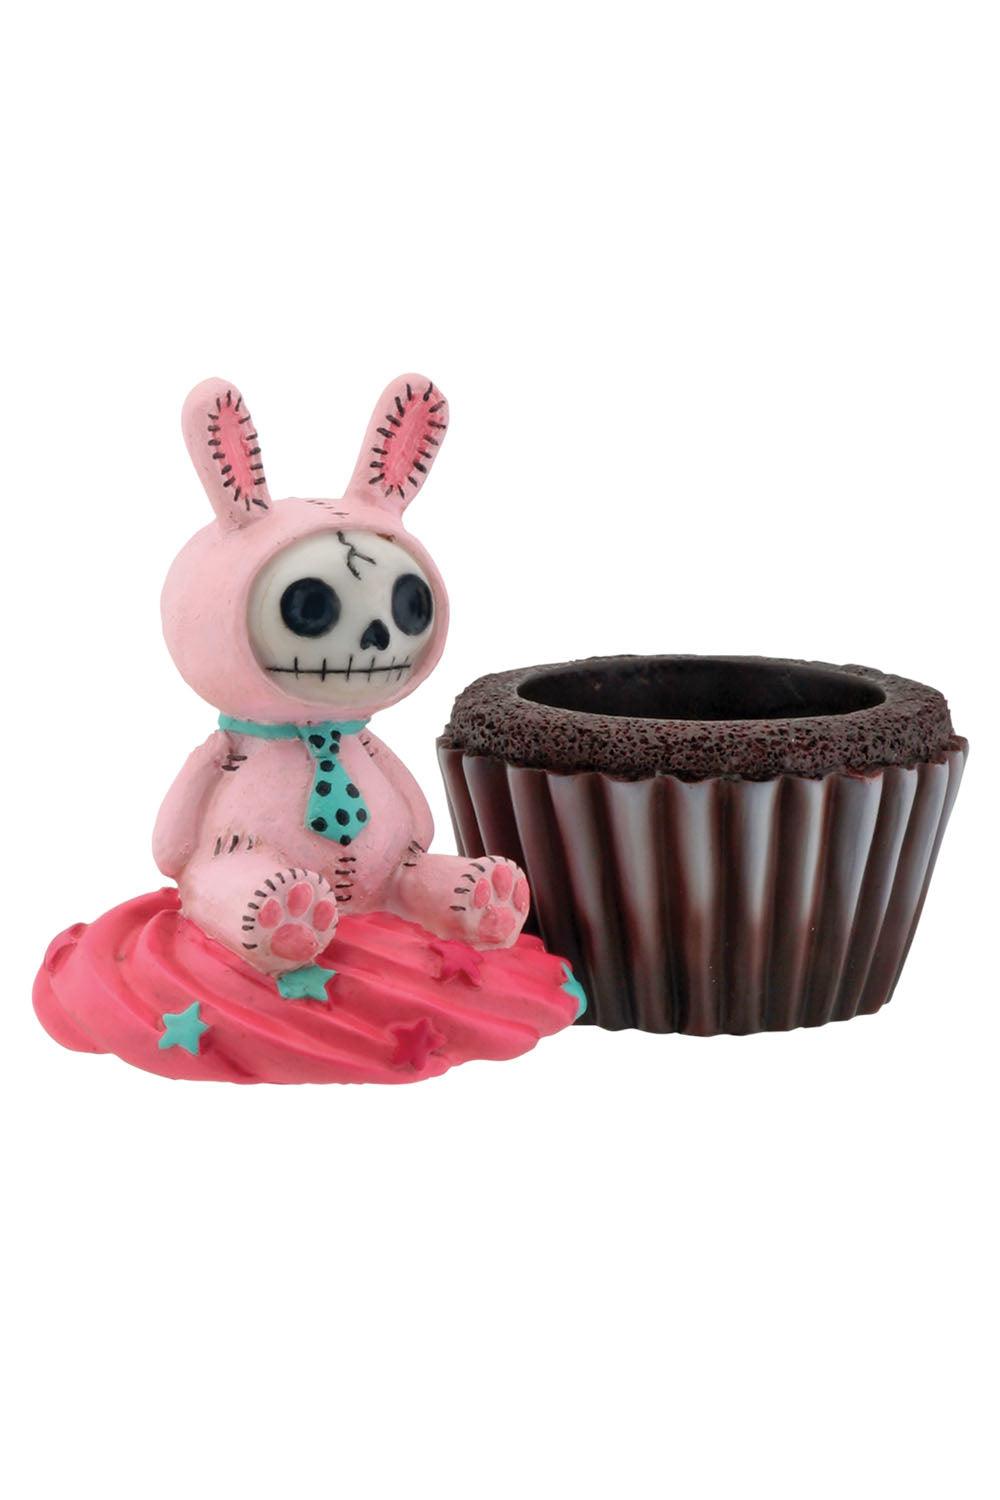 Furrybones Bun-Bun Cupcake Trinket Box - VampireFreaks